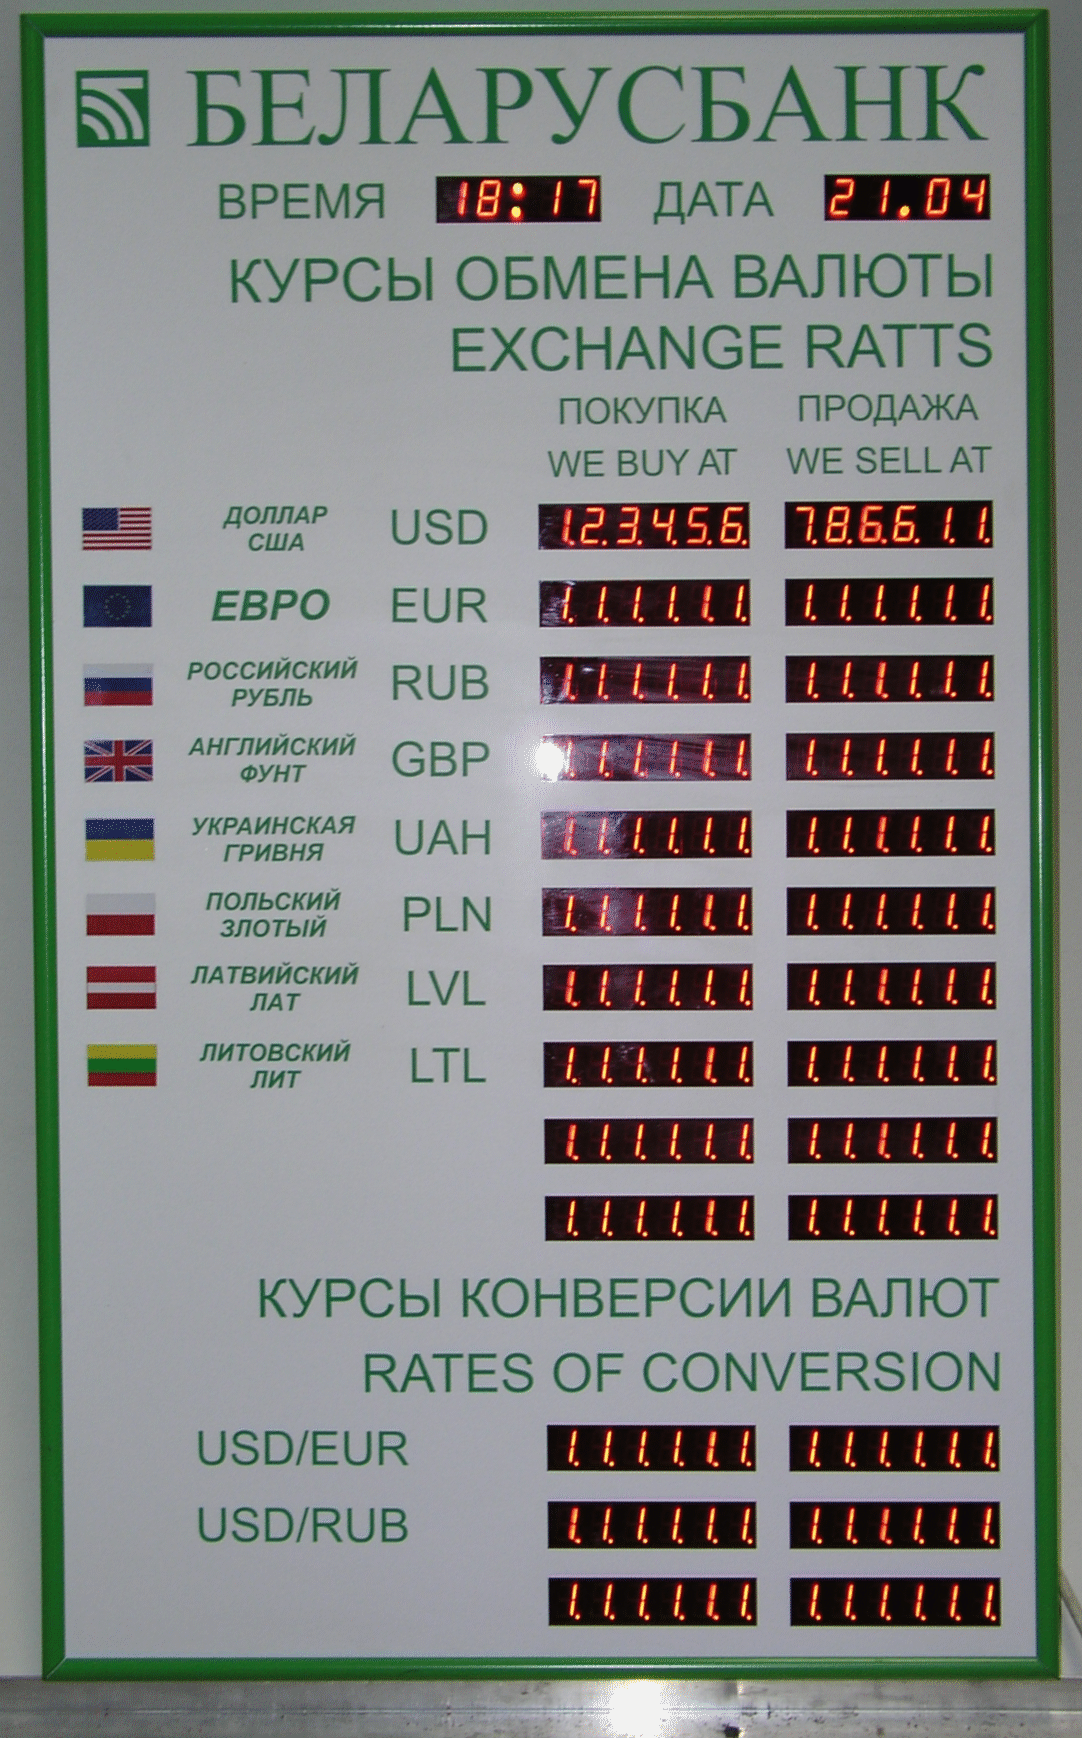 Белорусские банки курс валют. Обмен валюты. Беларусбанк курсы валют. Курс обмена валют. Курсы валют в Беларуси.